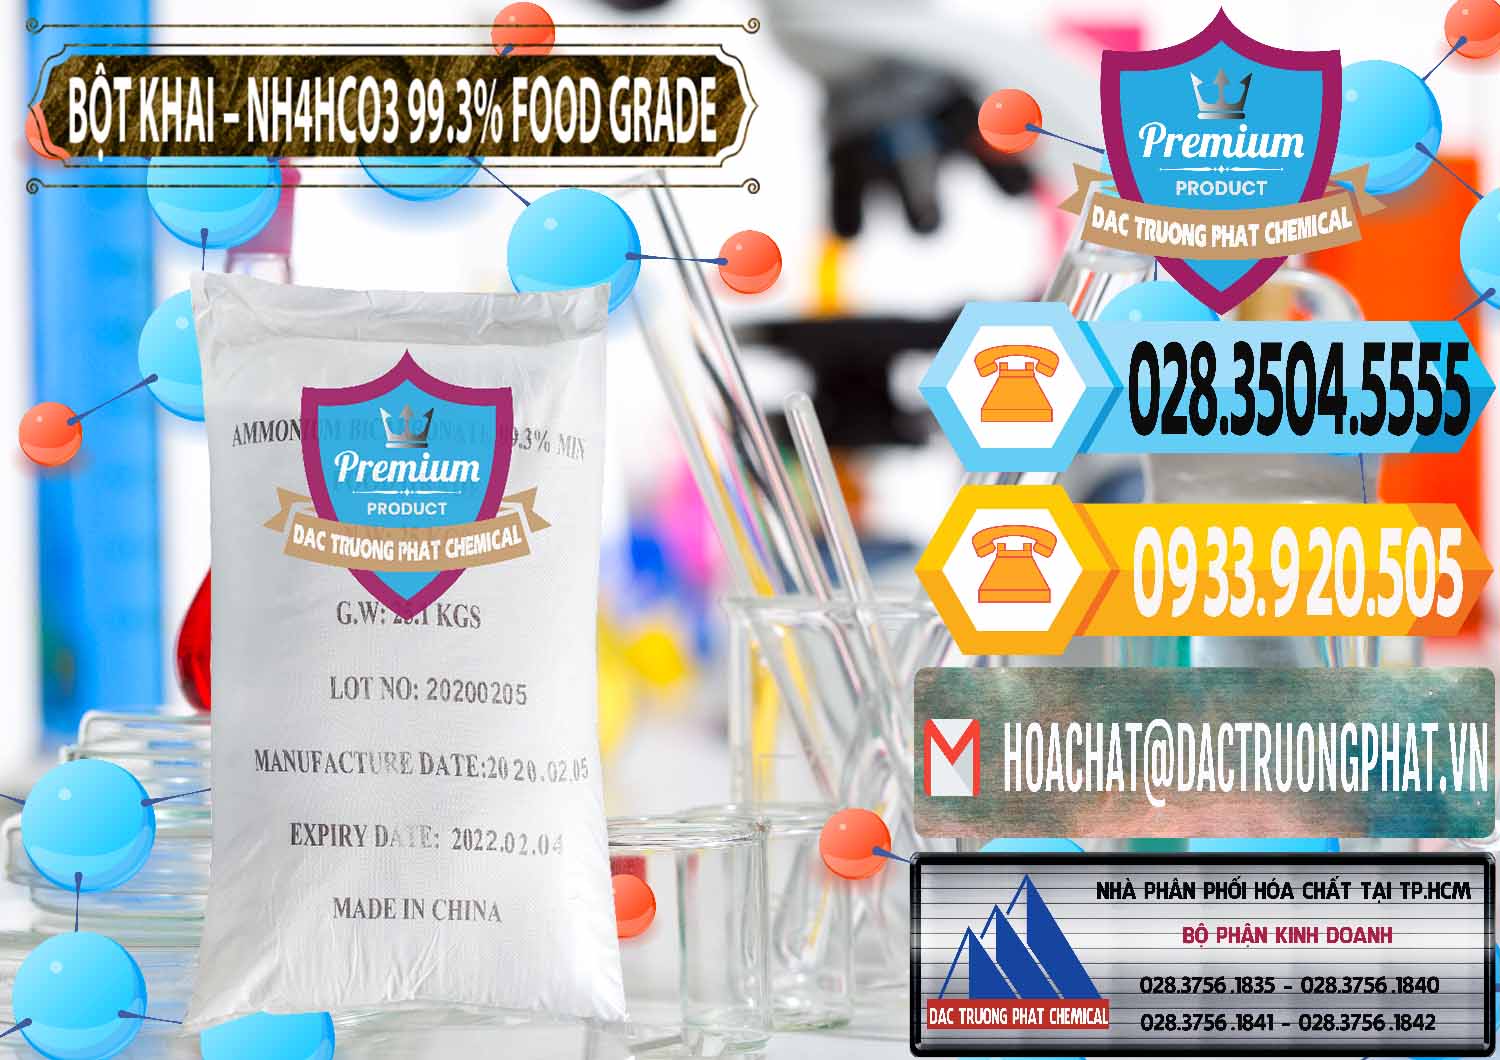 Nơi chuyên kinh doanh ( bán ) Ammonium Bicarbonate – Bột Khai NH4HCO3 Food Grade Trung Quốc China - 0019 - Cty phân phối ( bán ) hóa chất tại TP.HCM - hoachattayrua.net